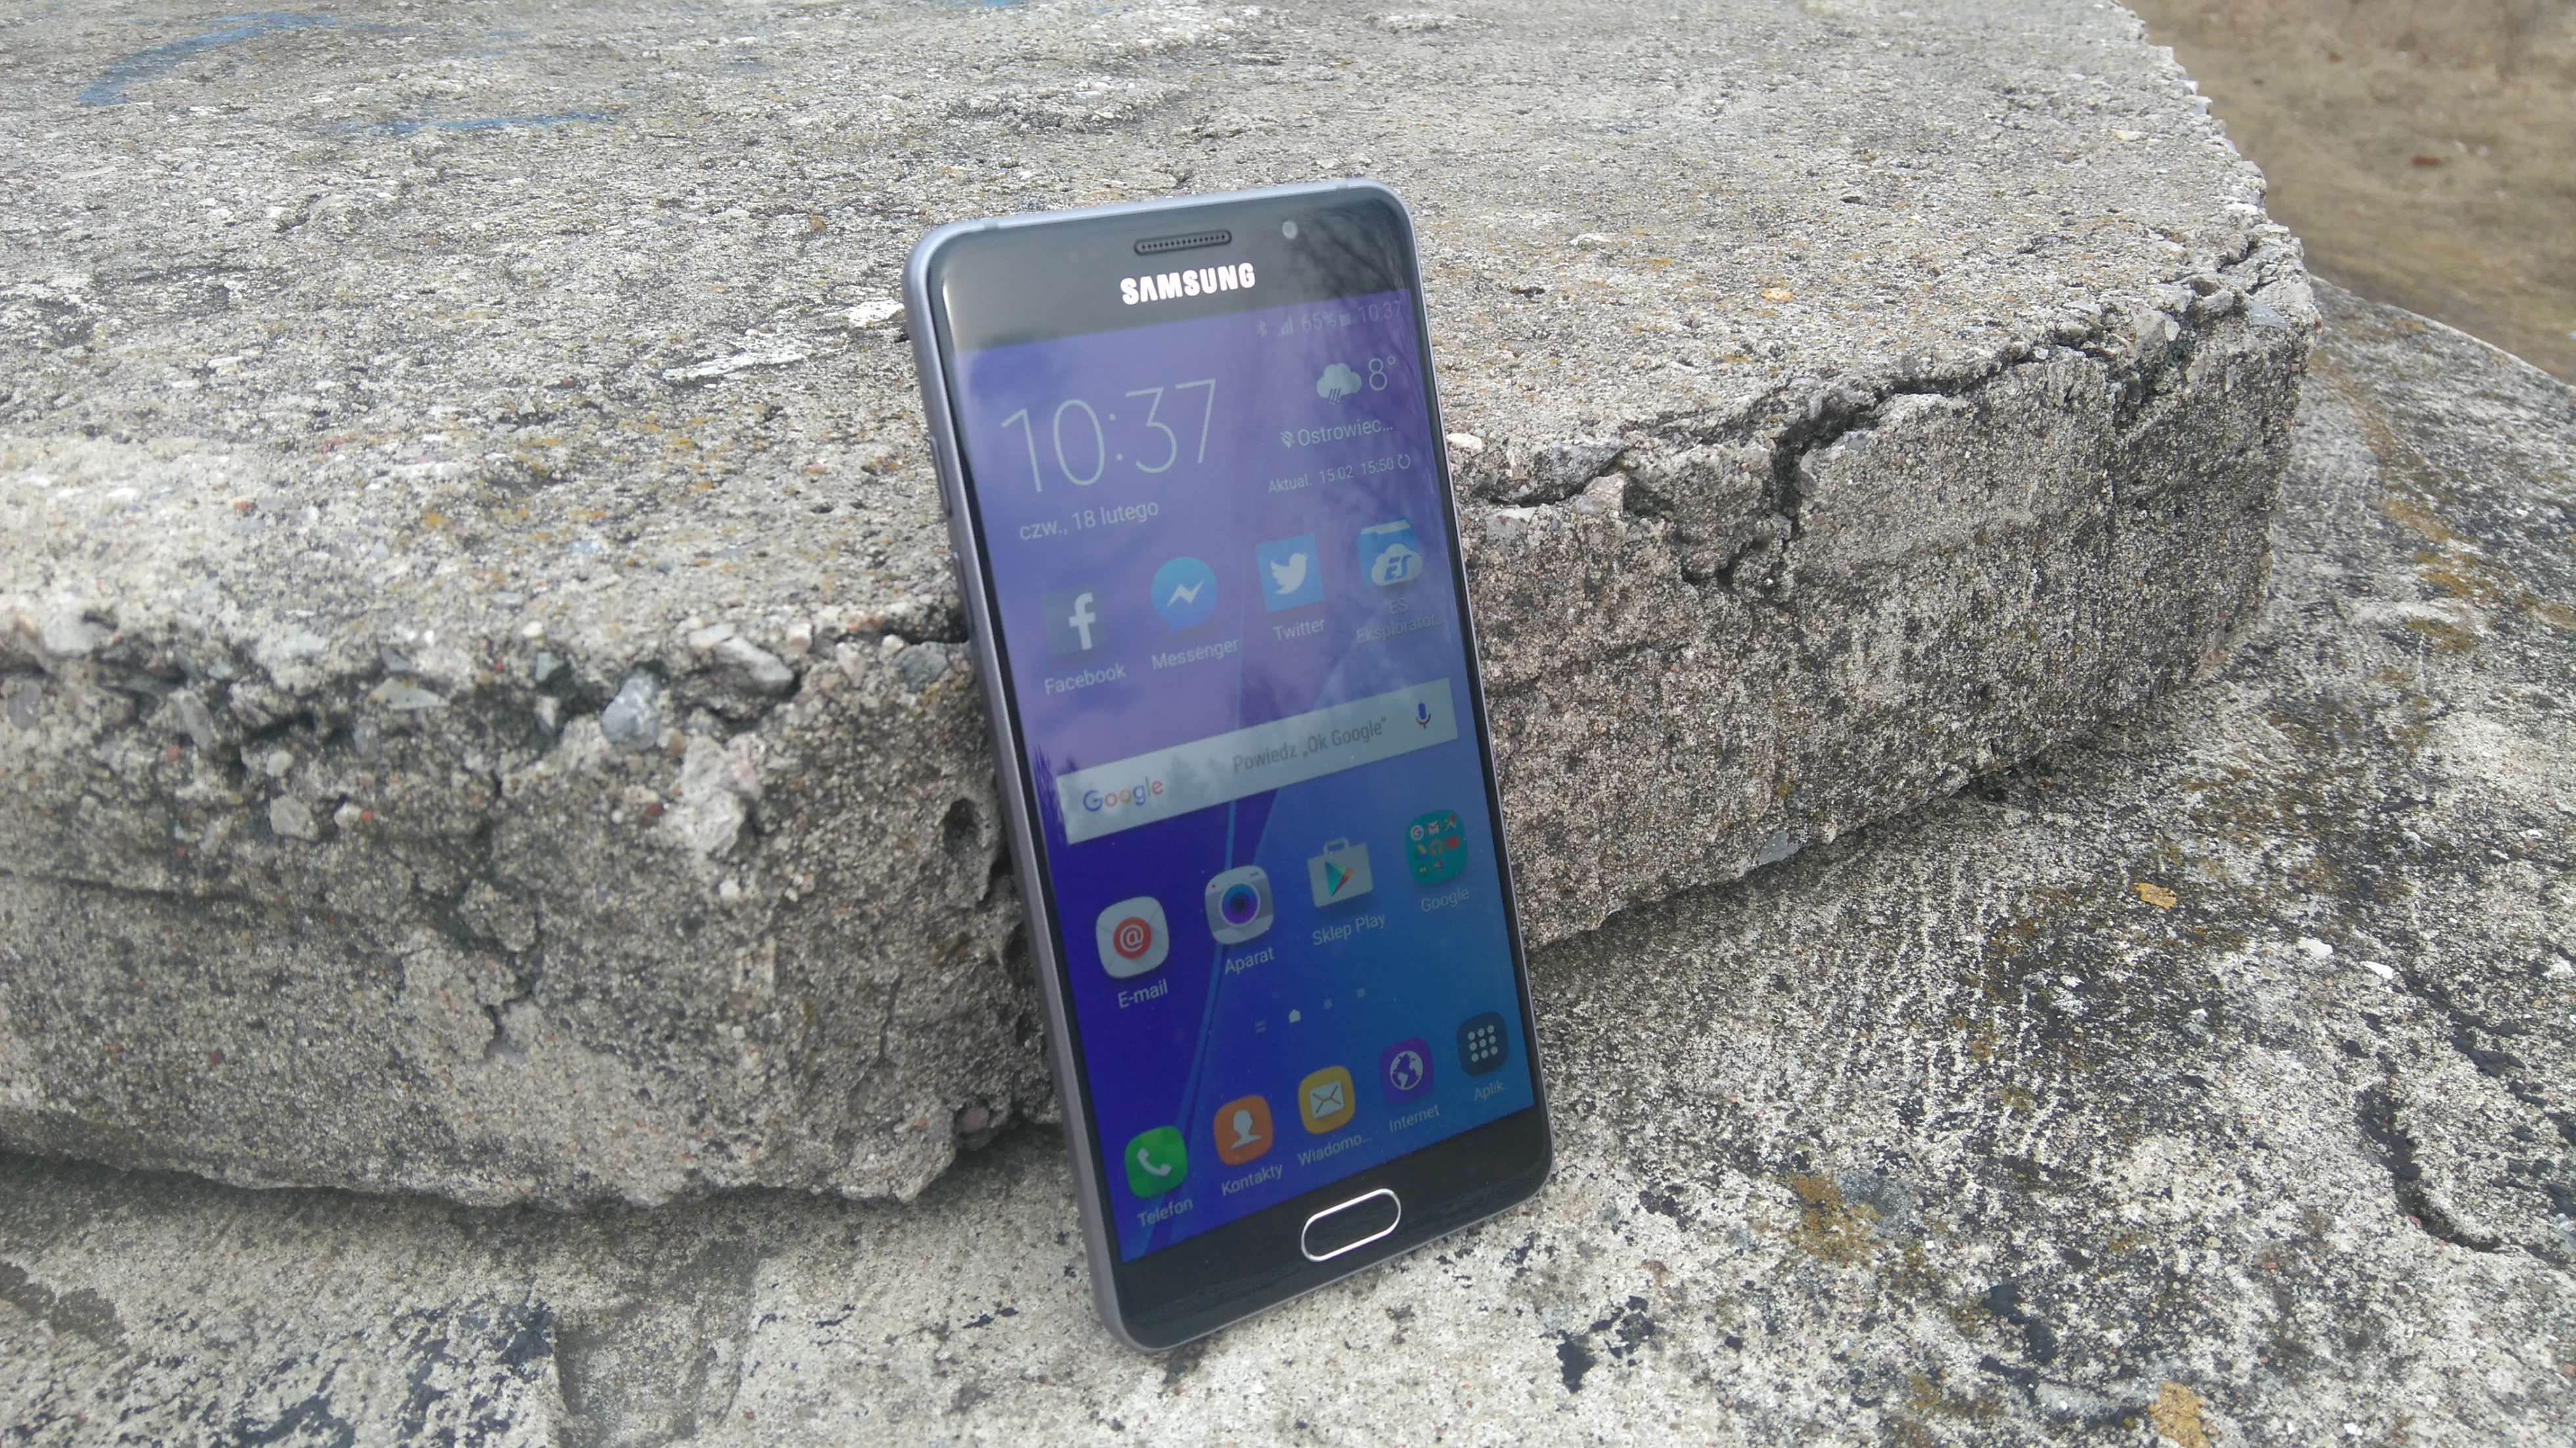 Samsung Galaxy A5 (2016) - recenzja urządzenia recenzje, polecane zalety, wady, Specyfikacja, Samsung Galaxy A5 2016, Samsung, recenzja Samsung Galaxy A5 (2016), Recenzja, polska recenzja, Opis, czy warto kupić Samsung Galaxy A5 (2016), cena, a5 z 2016, 2016  Samsung na nowo zapałał miłością do wysokiej jakości wykonania swoich mobilnych produktów, czego dowodem jest tegoroczna seria A. DSC 0006 1